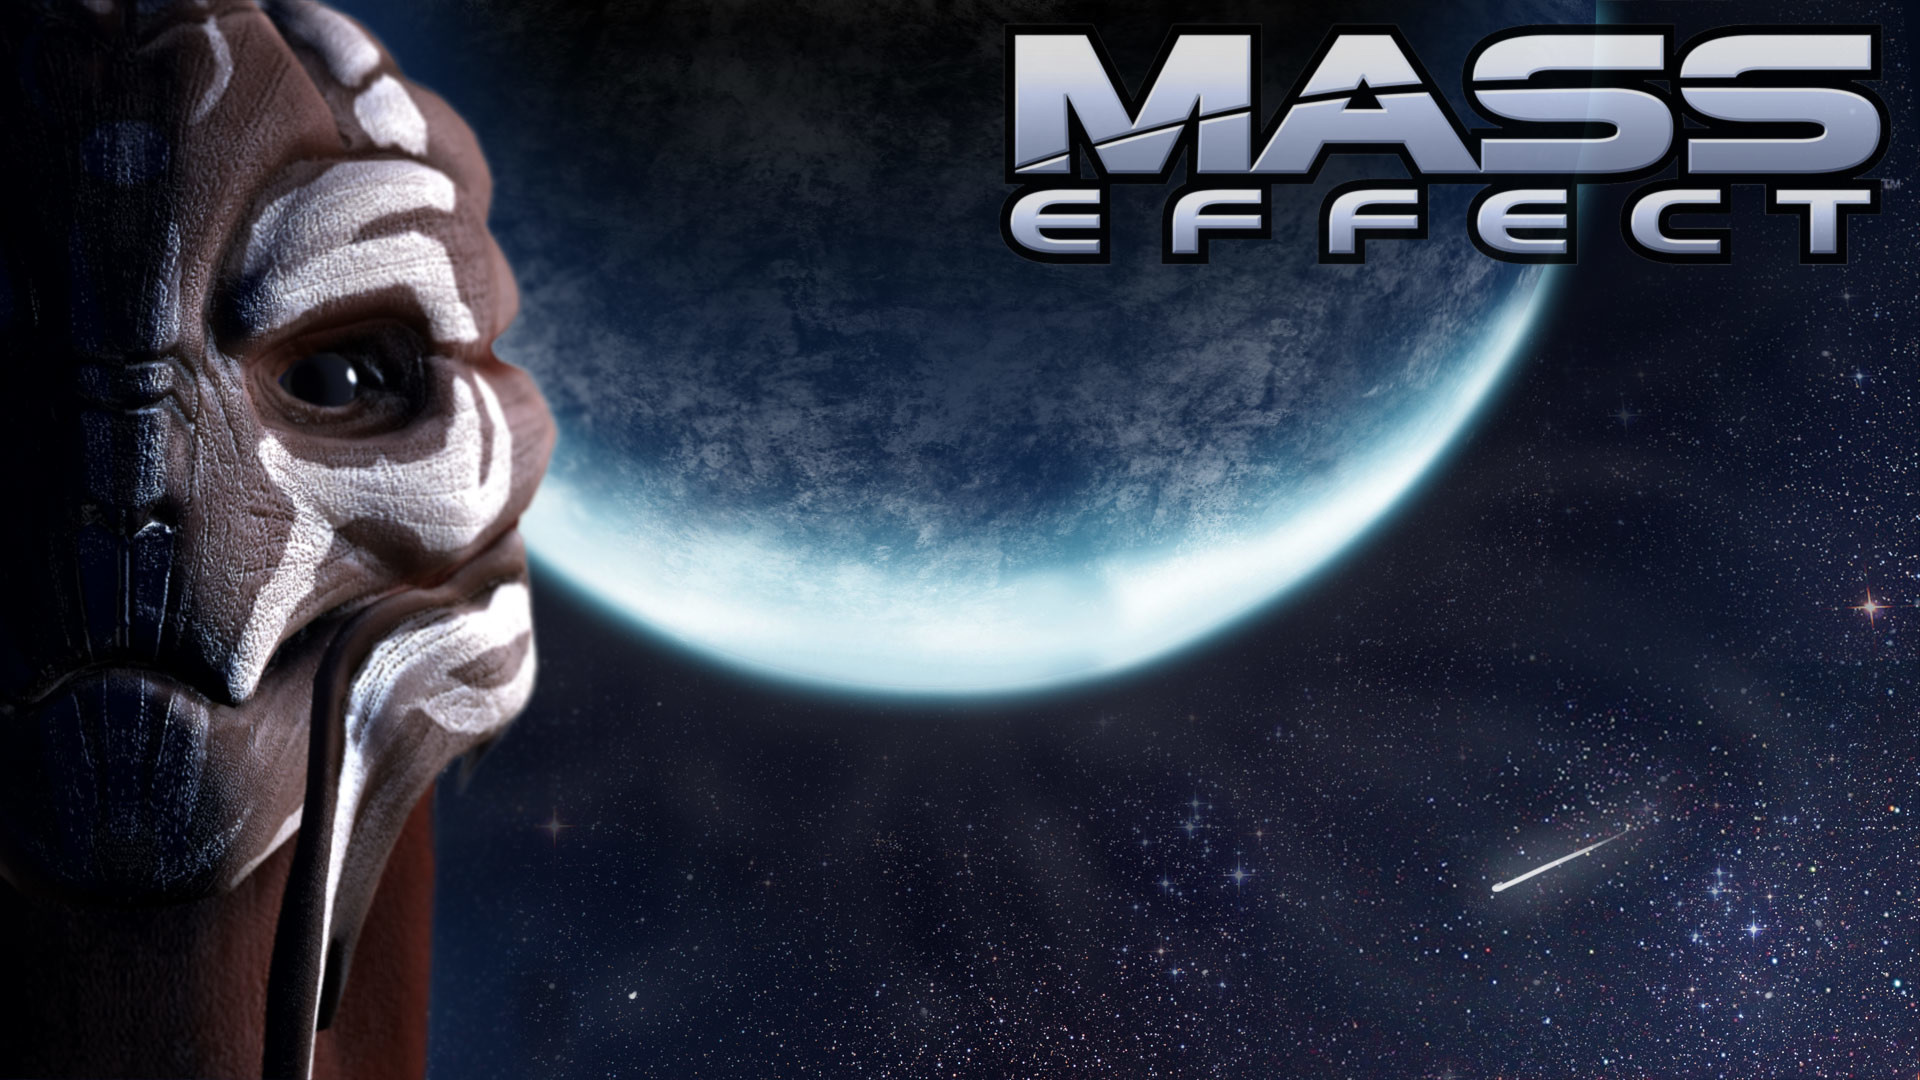 Download Mass Effect Garrus Vakarian Wallpaper For iPhone | HD Wallpapers |  Pinterest | Hd wallpaper and Wallpaper